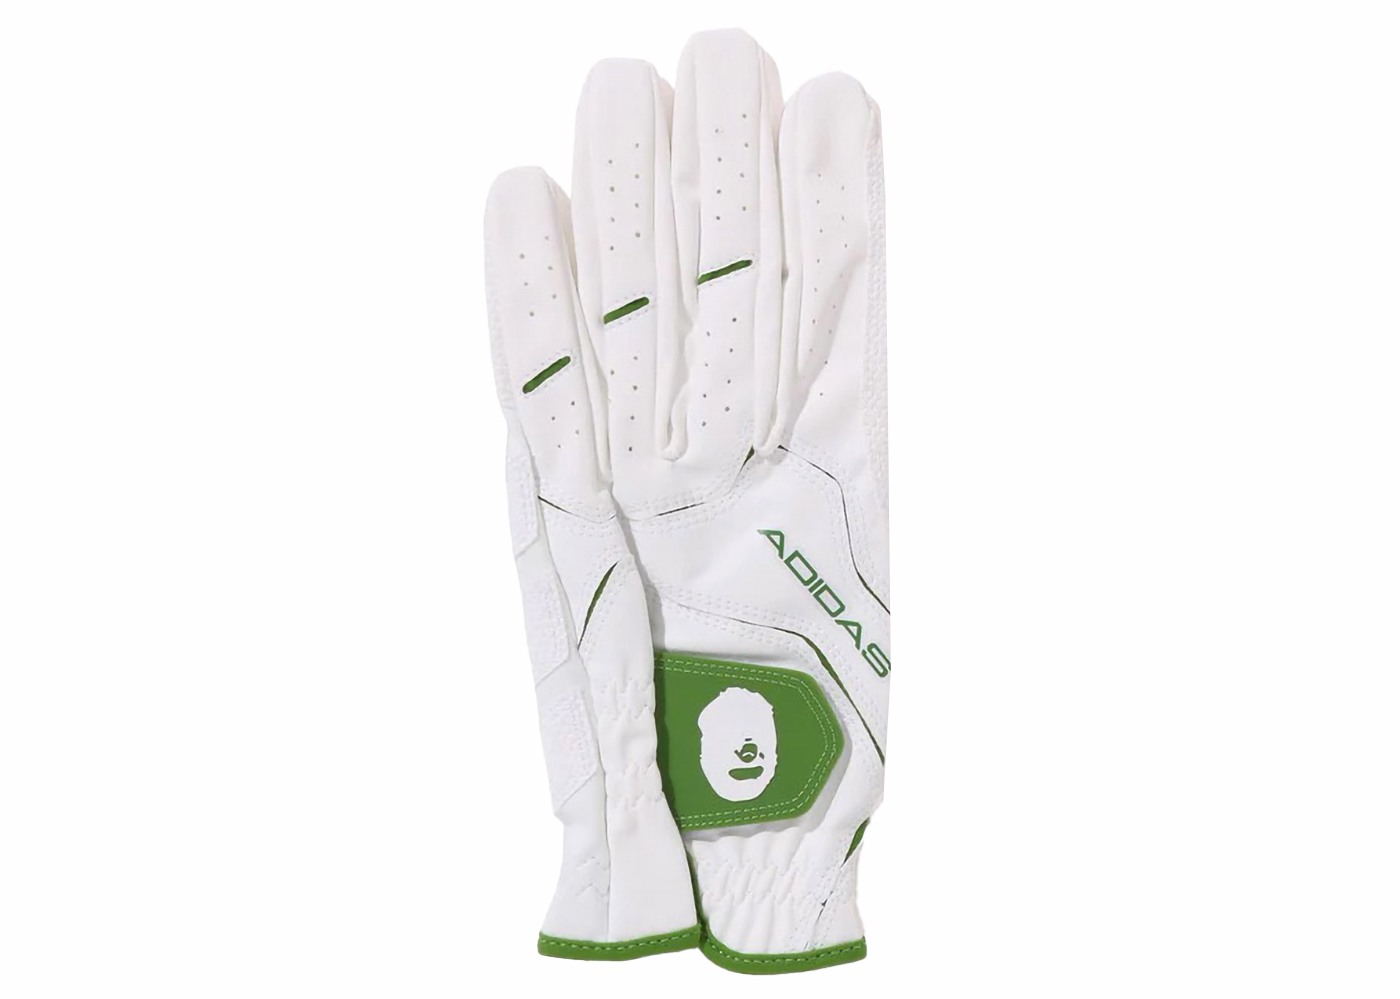 BAPE x adidas Golf Glove White